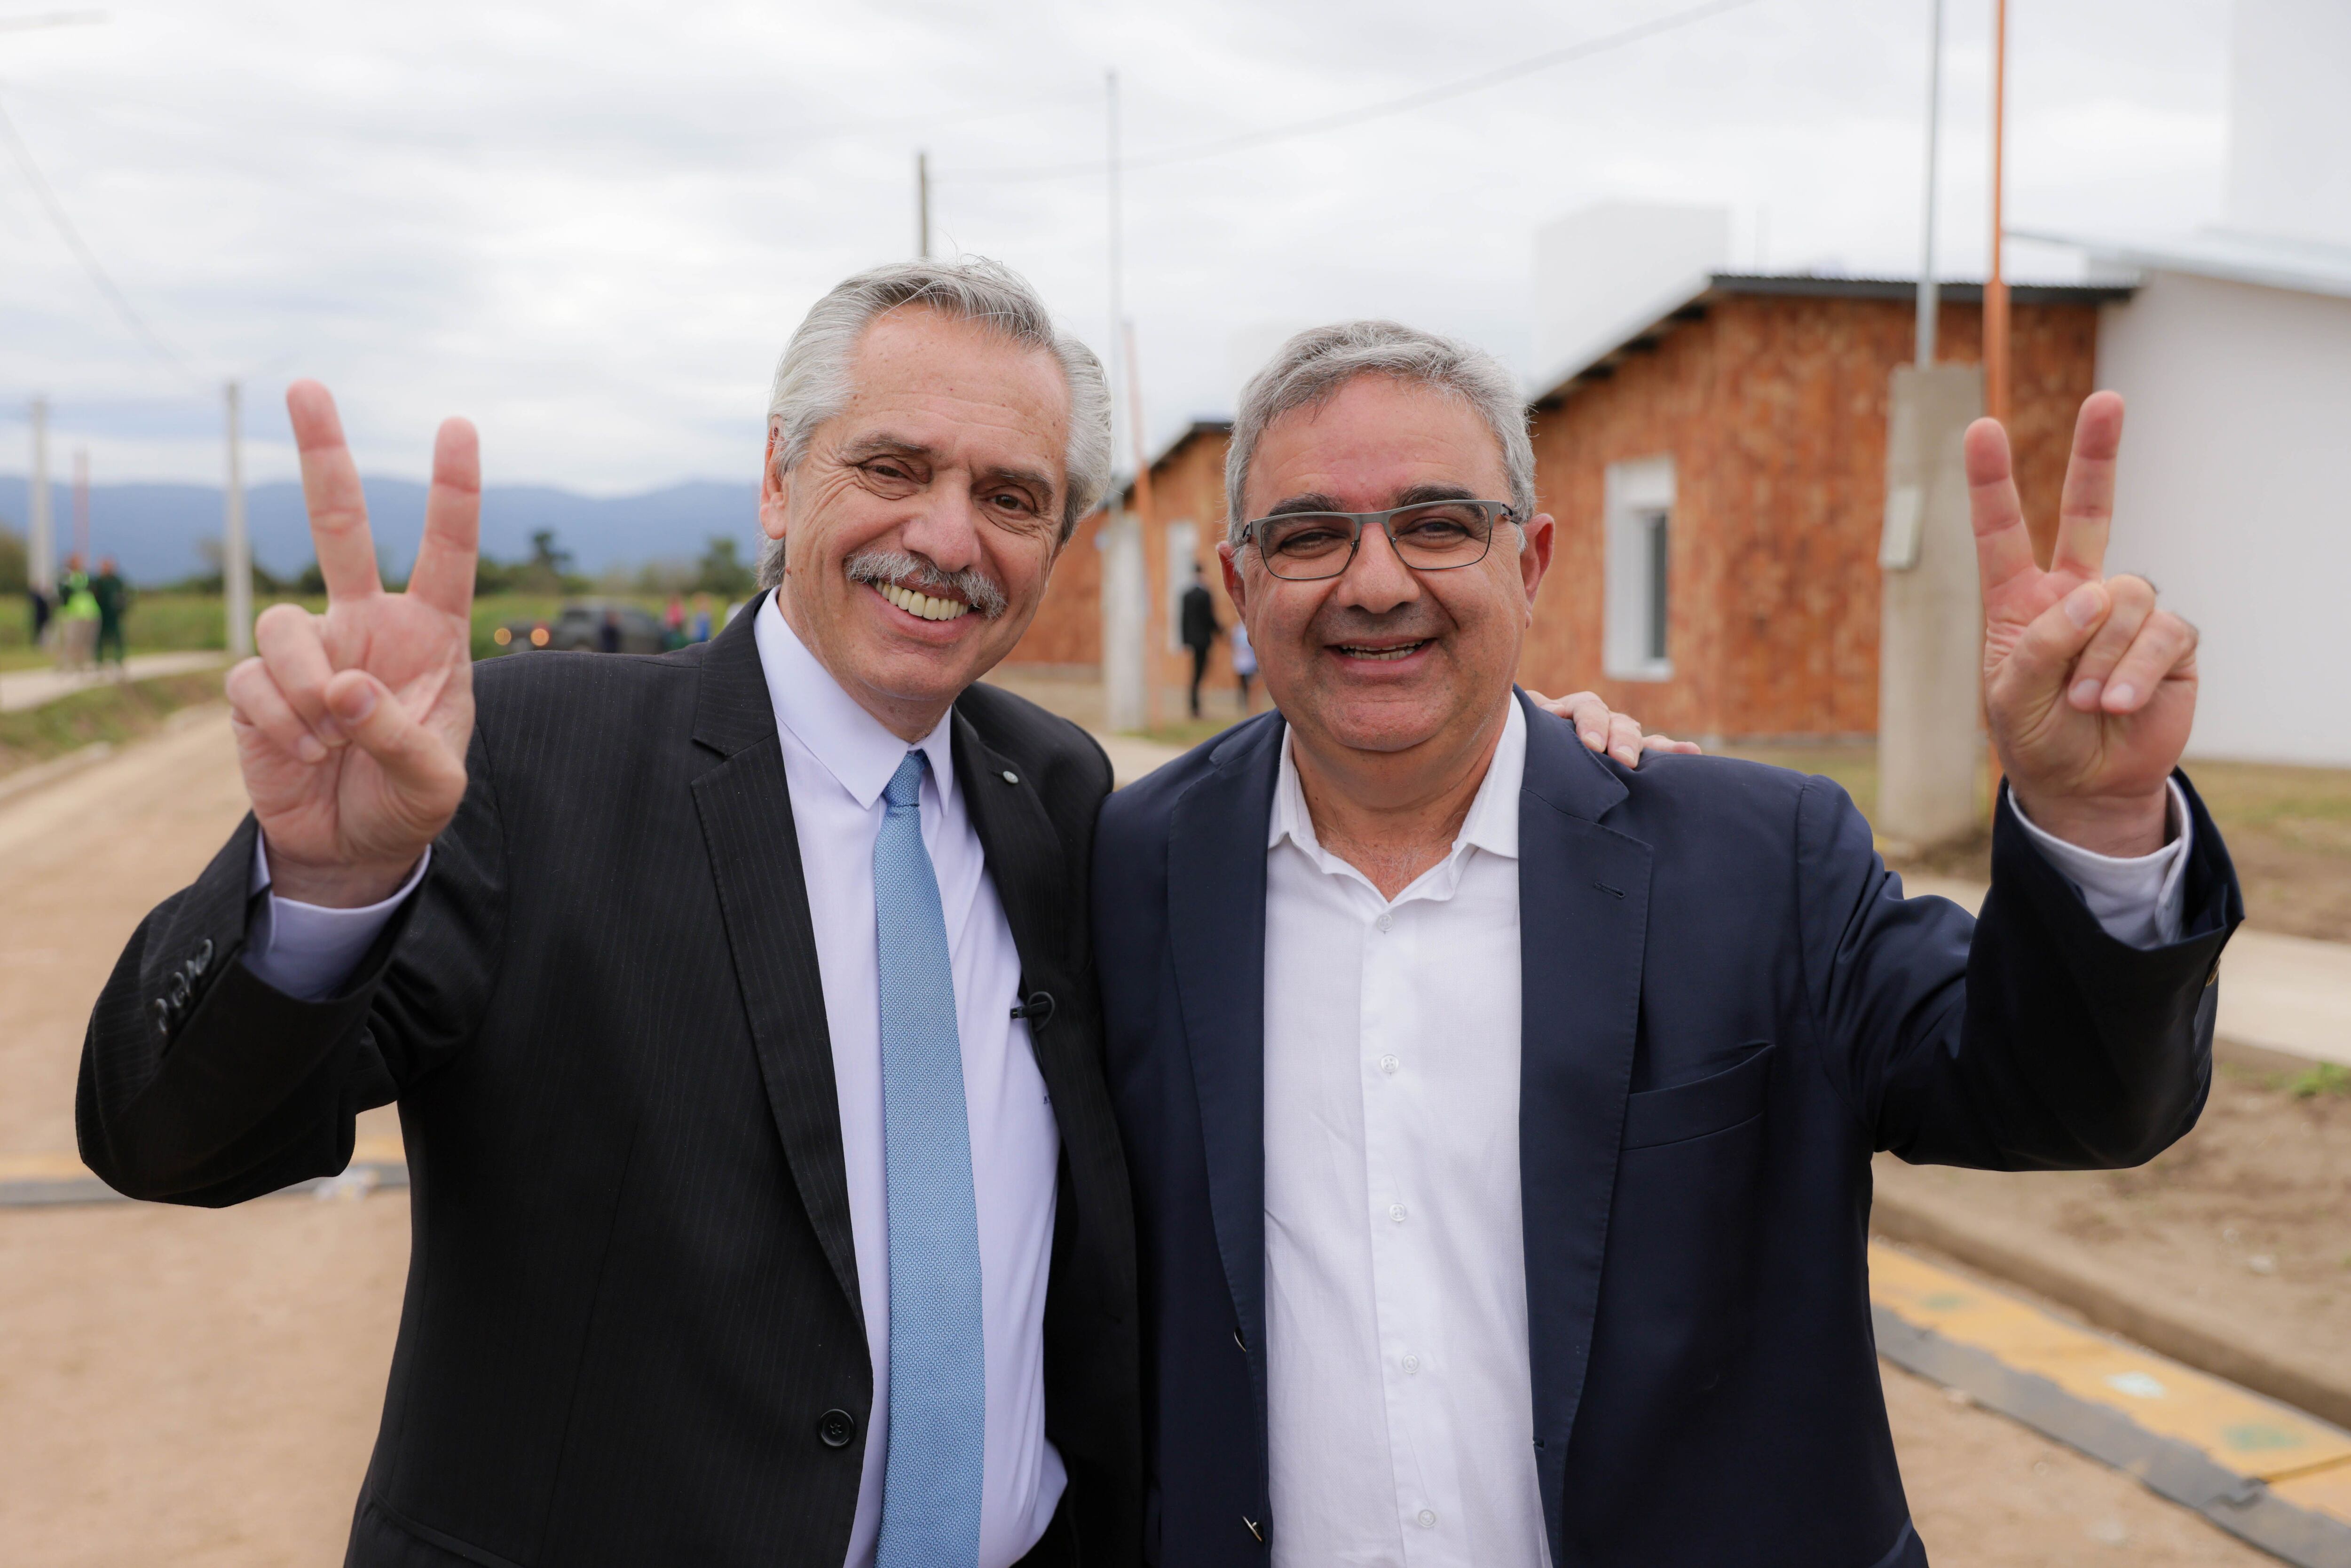 Alberto Fernández viajó esta semana a Catamarca para reunirse con el gobernador Raúl Jalil, cercano a Quintela. Mañana irá a La Rioja después de los comicios donde se impondría el PJ